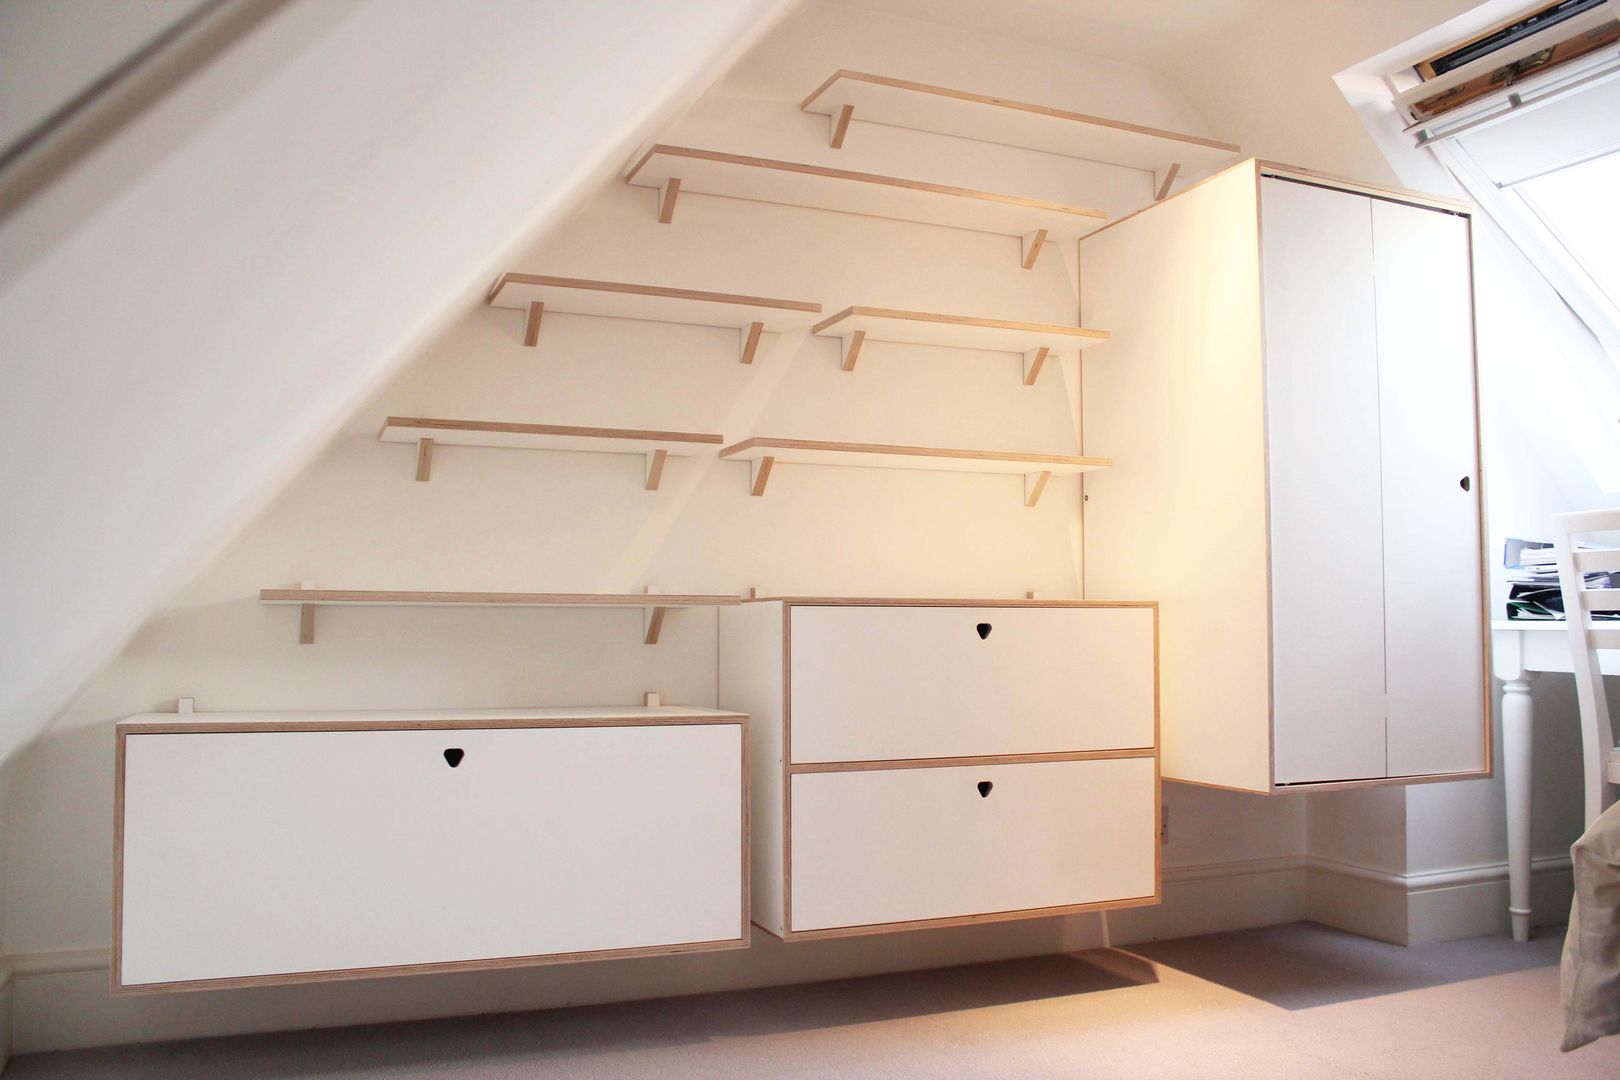 Full Shelving system with cabinets and wardrobe Happenstance Workshop Moderne Schlafzimmer Sperrholz Kleiderschränke und Kommoden